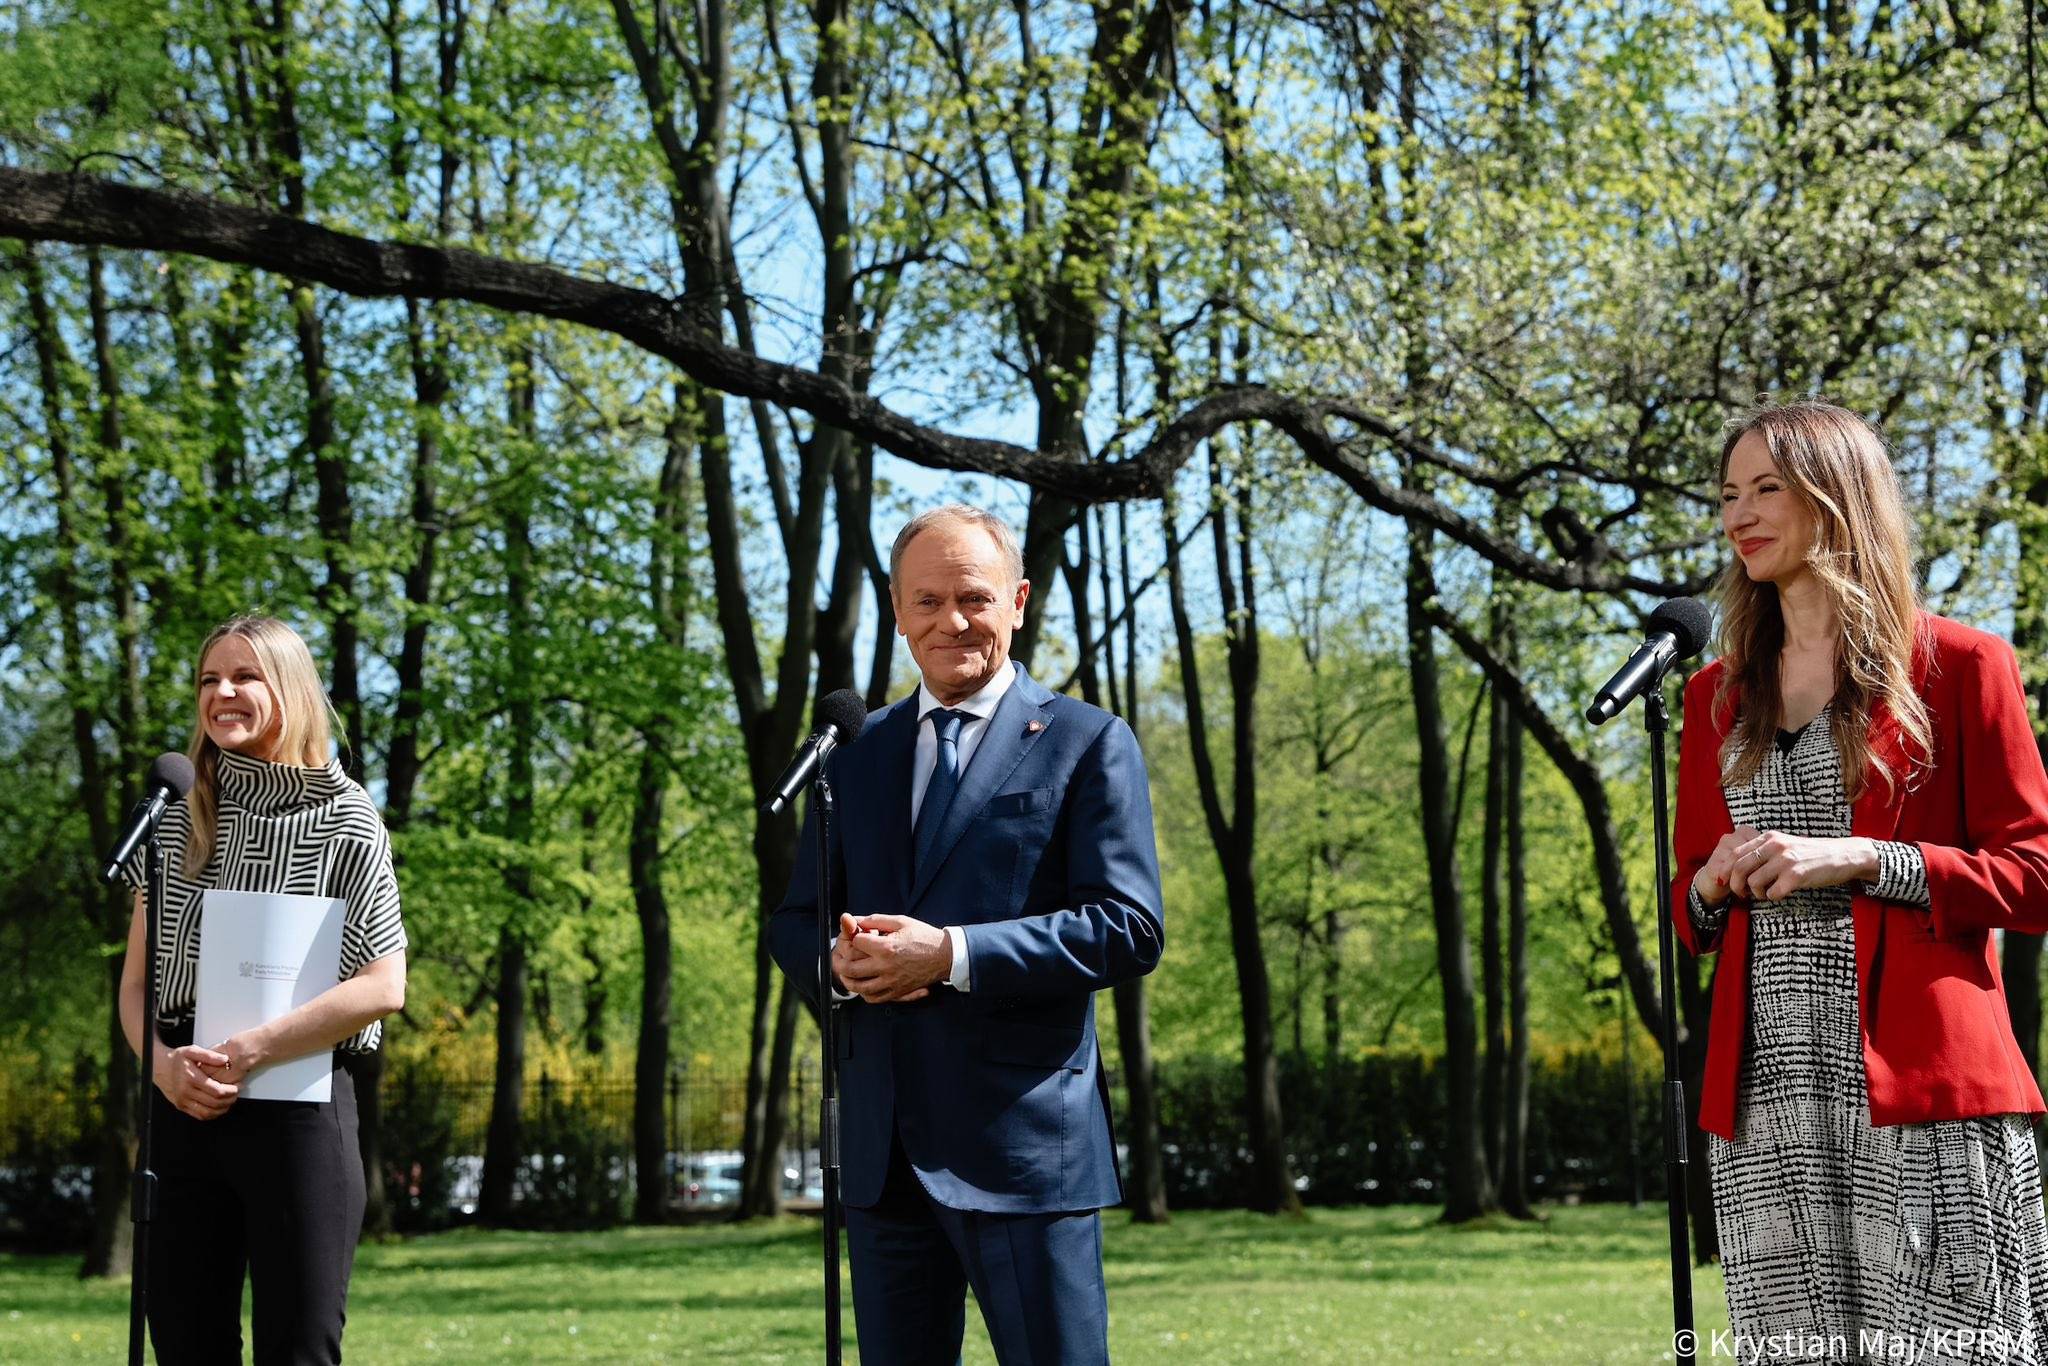 na zdjęciu widzimy stojących przed mikrofonami w zielonym słonecznym parku - premiera Donalda Tuska, ministrę pracy Agnieszkę Dziemianowicz-Bąk i sekretarz stanu Aleksandrę Gajewską